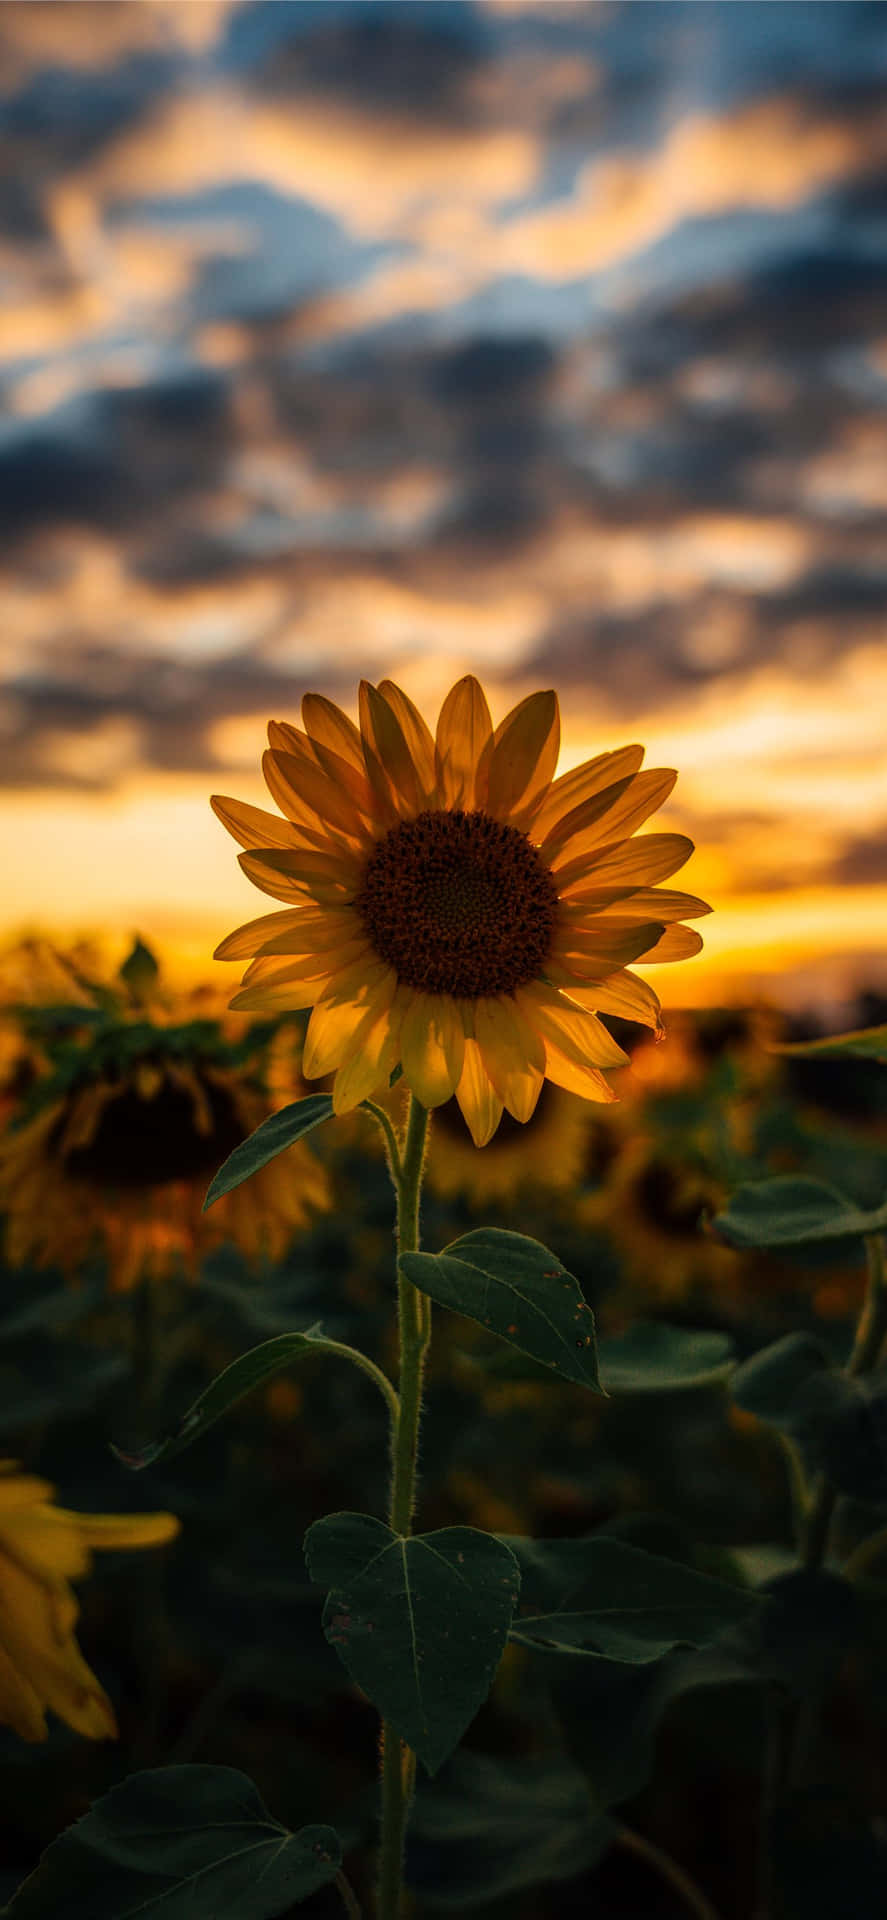 Genießensie Die Schönheit Einer Sonnenblume Mit Diesem Ästhetischen Sonnenblumen-hintergrundbild Für Das Iphone. Wallpaper